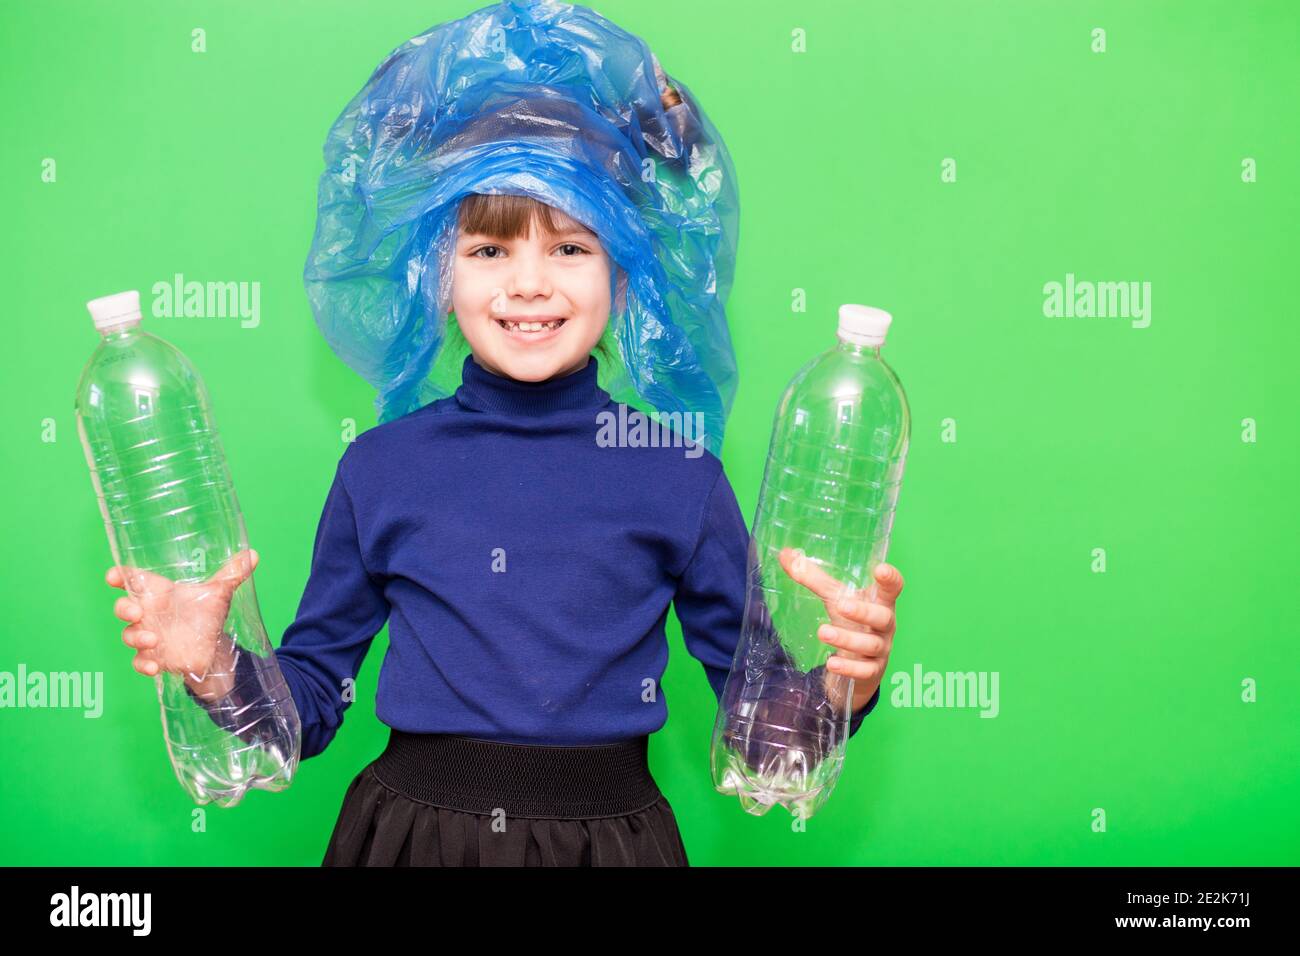 Une fille tient un sac poubelle et une bouteille en plastique et montre de l'intérêt pour les problèmes environnementaux isolés sur fond vert. Enfant habitué à assumer la responsabilité des ordures depuis l'enfance. Concept de tri des déchets en plastique Banque D'Images